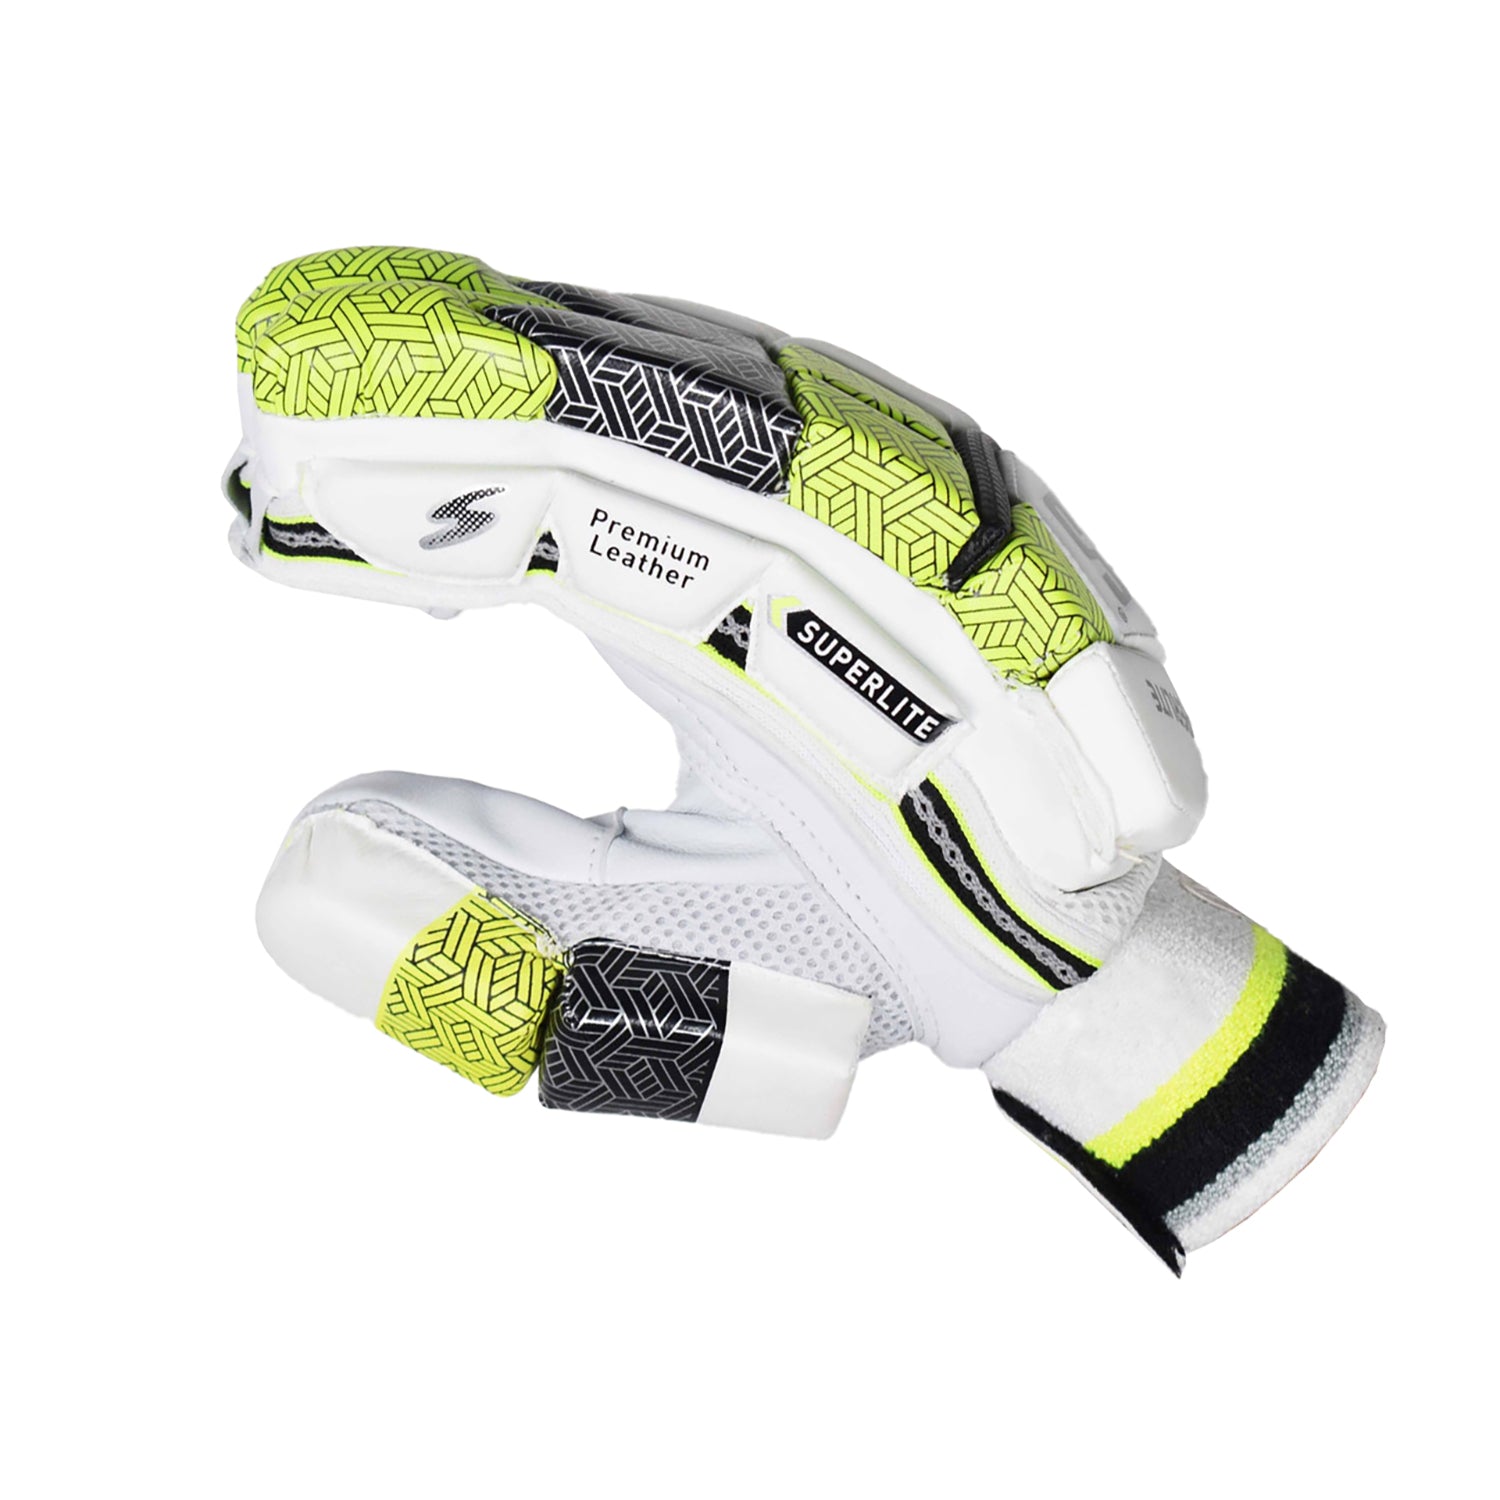 SS Super Lite RH Batting Gloves, White/Green - Best Price online Prokicksports.com